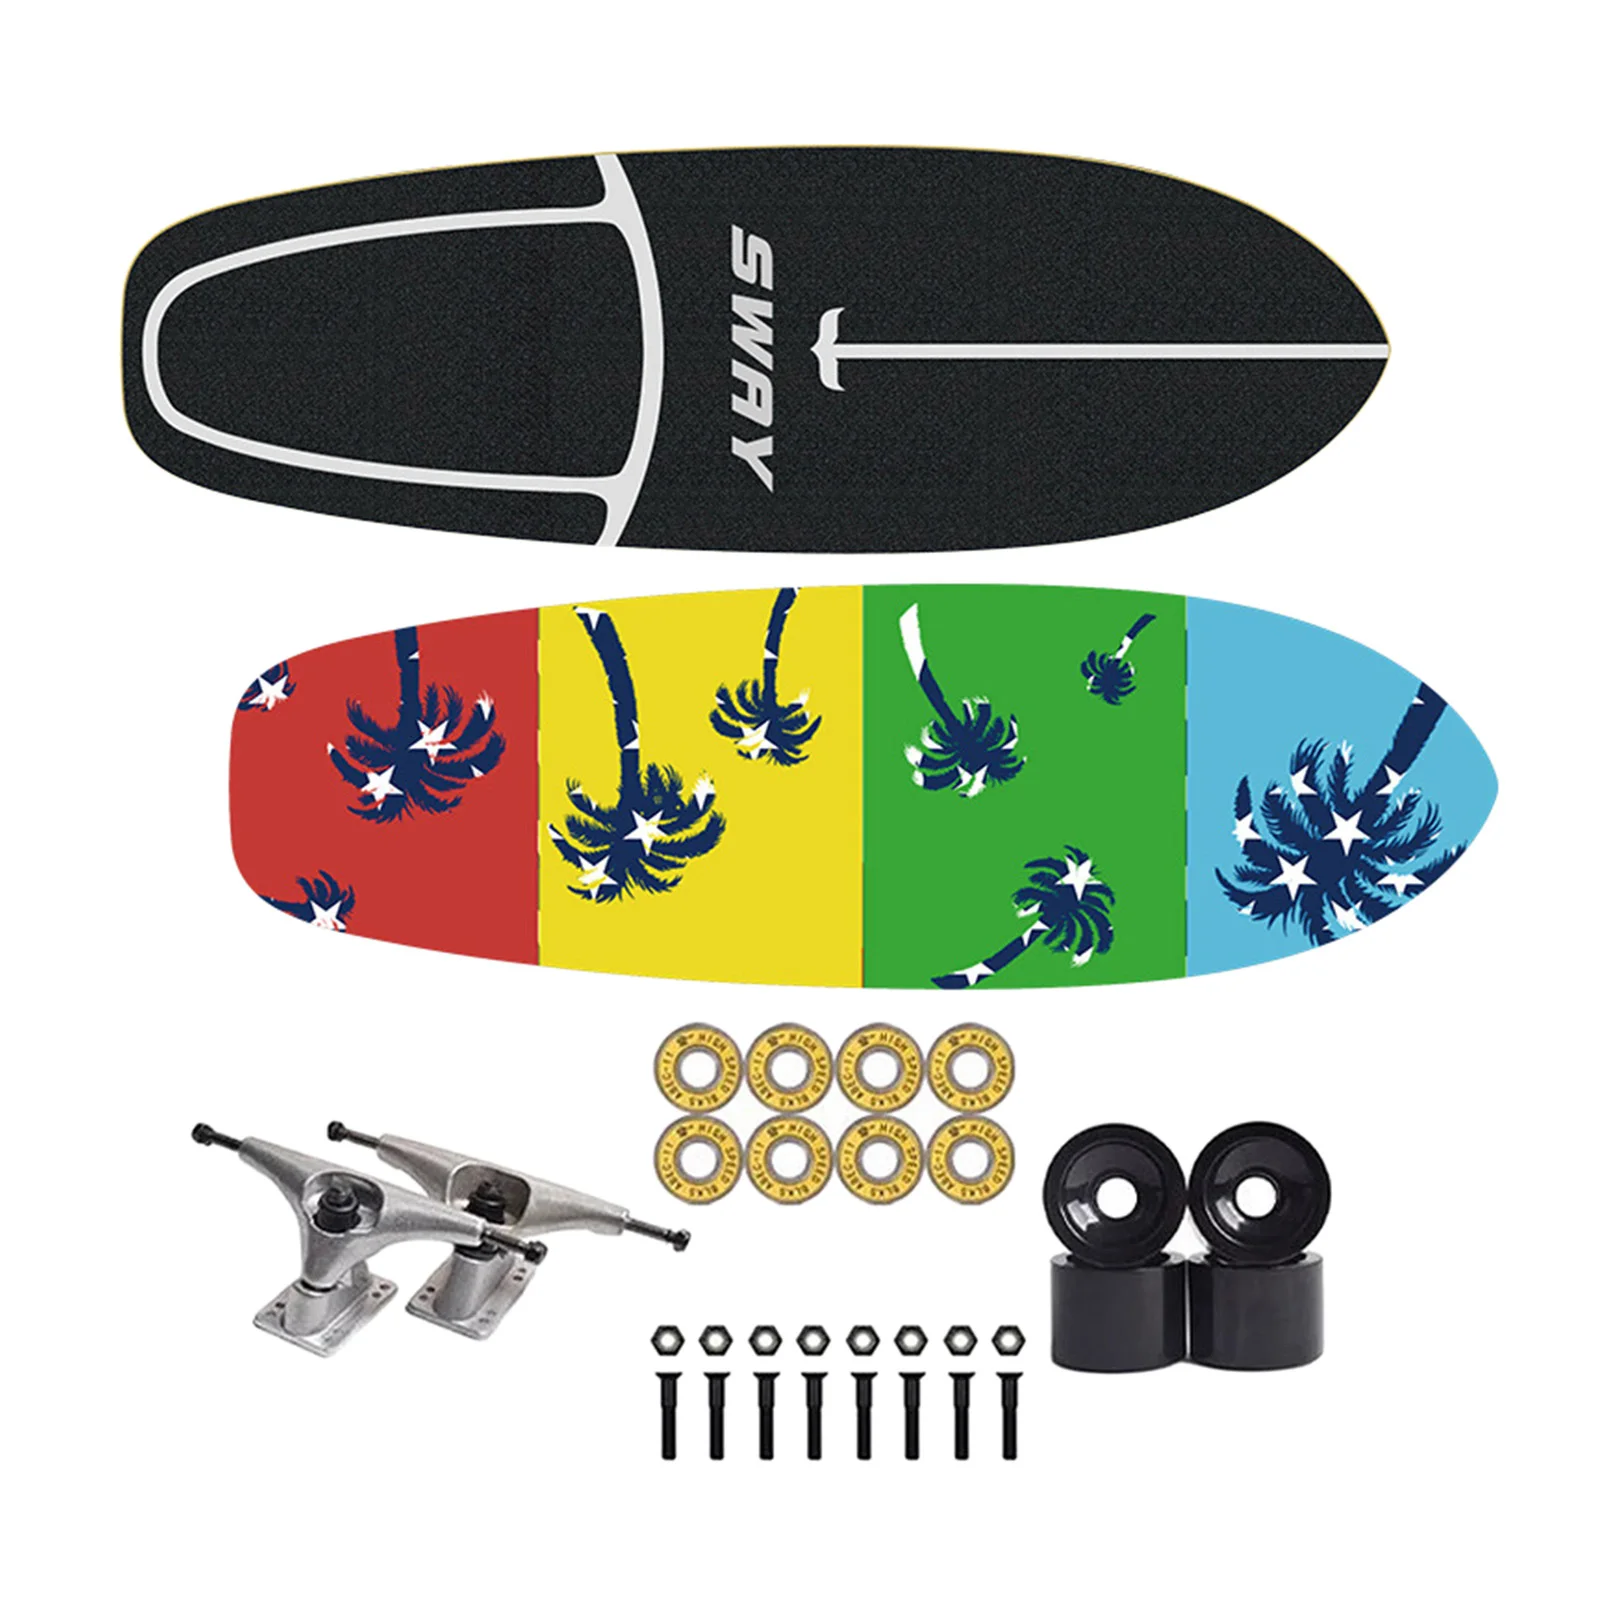 Beginner Skateboard Maple Deck Complete CX4 Trucks ABEC Bearing Skate Board Starter Cruiser Short Boards Children Gift